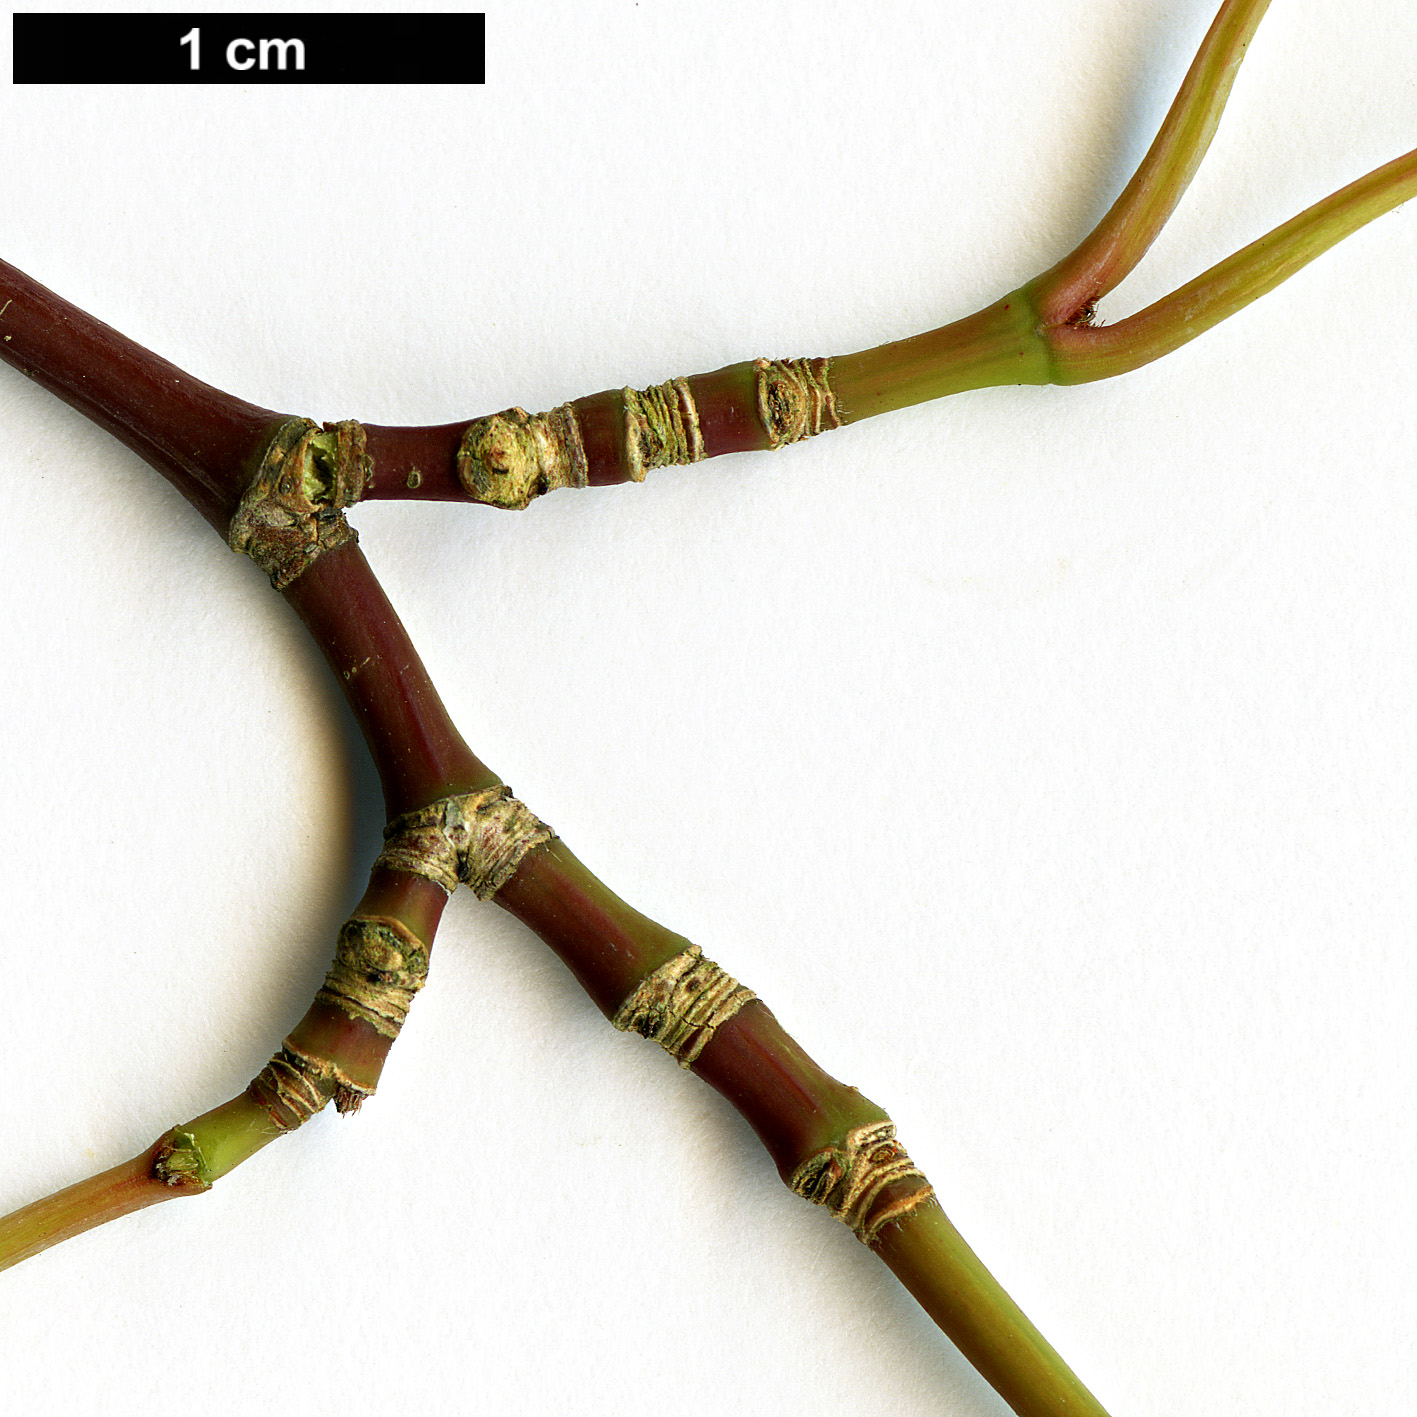 High resolution image: Family: Sapindaceae - Genus: Acer - Taxon: aff. laevigatum